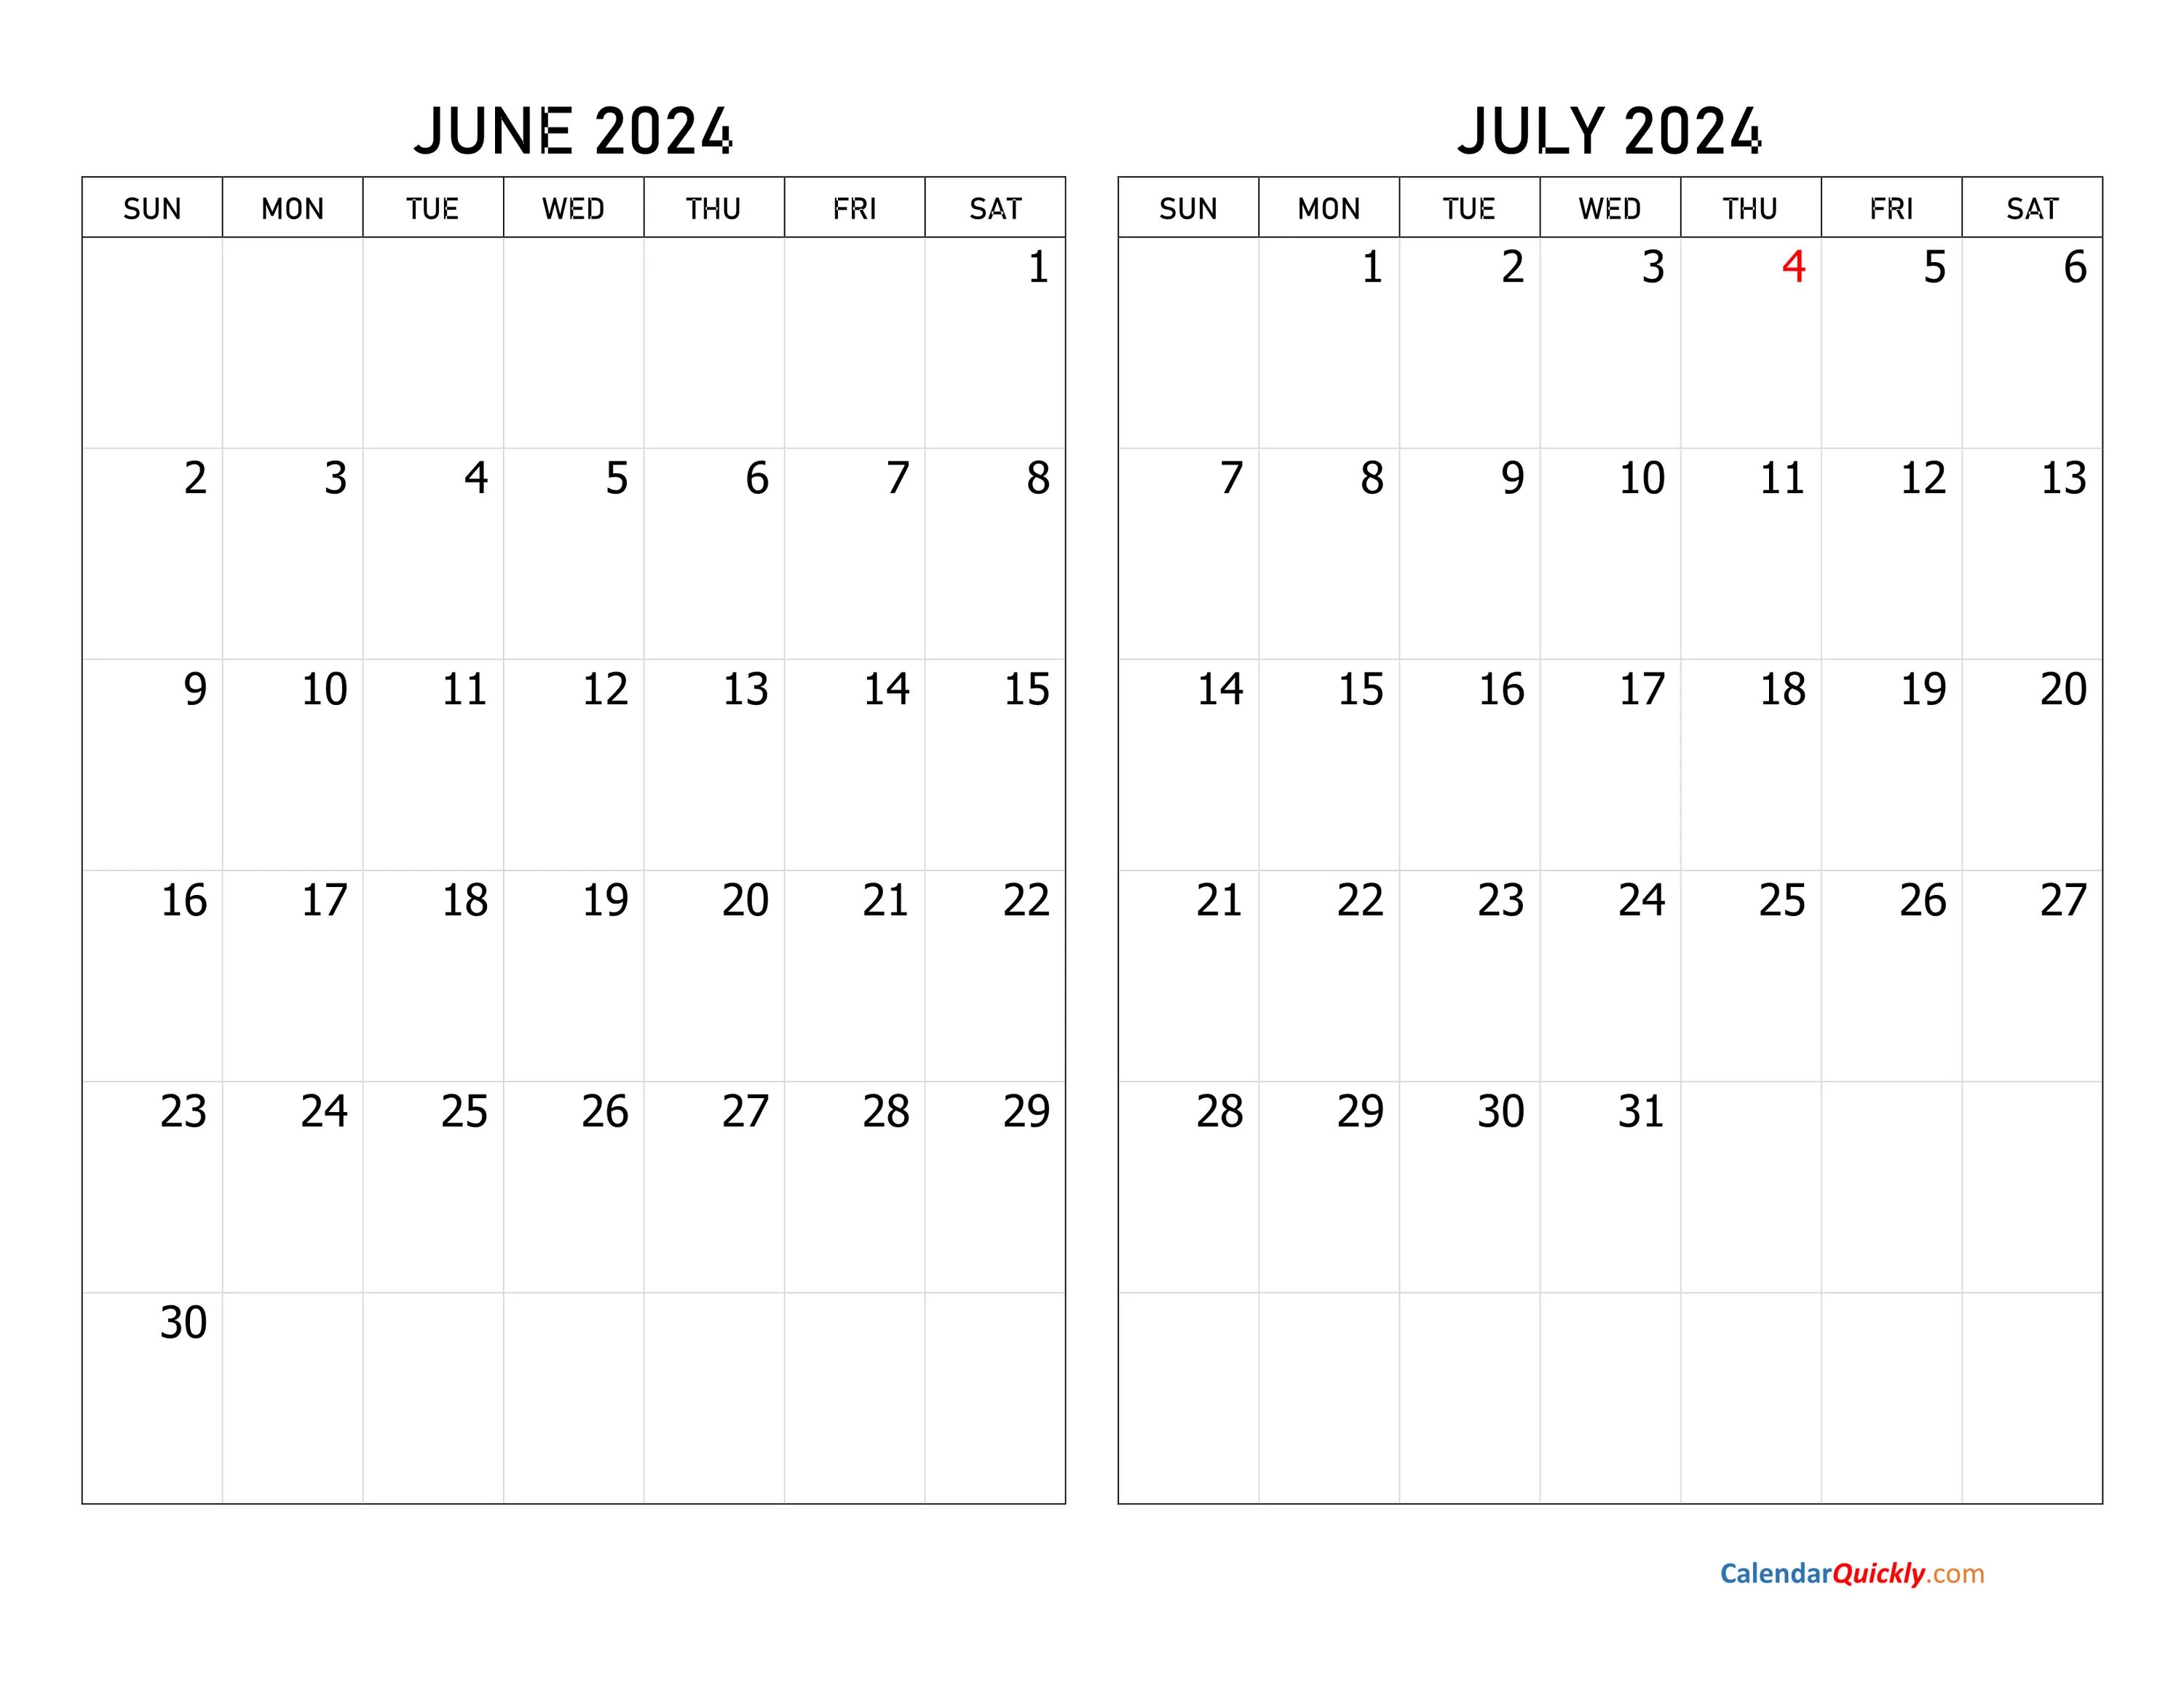 Календарь апрель май июнь 2024 года. Календарь июль 2022. Декабрь 2022. Календарь октябрь 2022. Календарь май 2022.